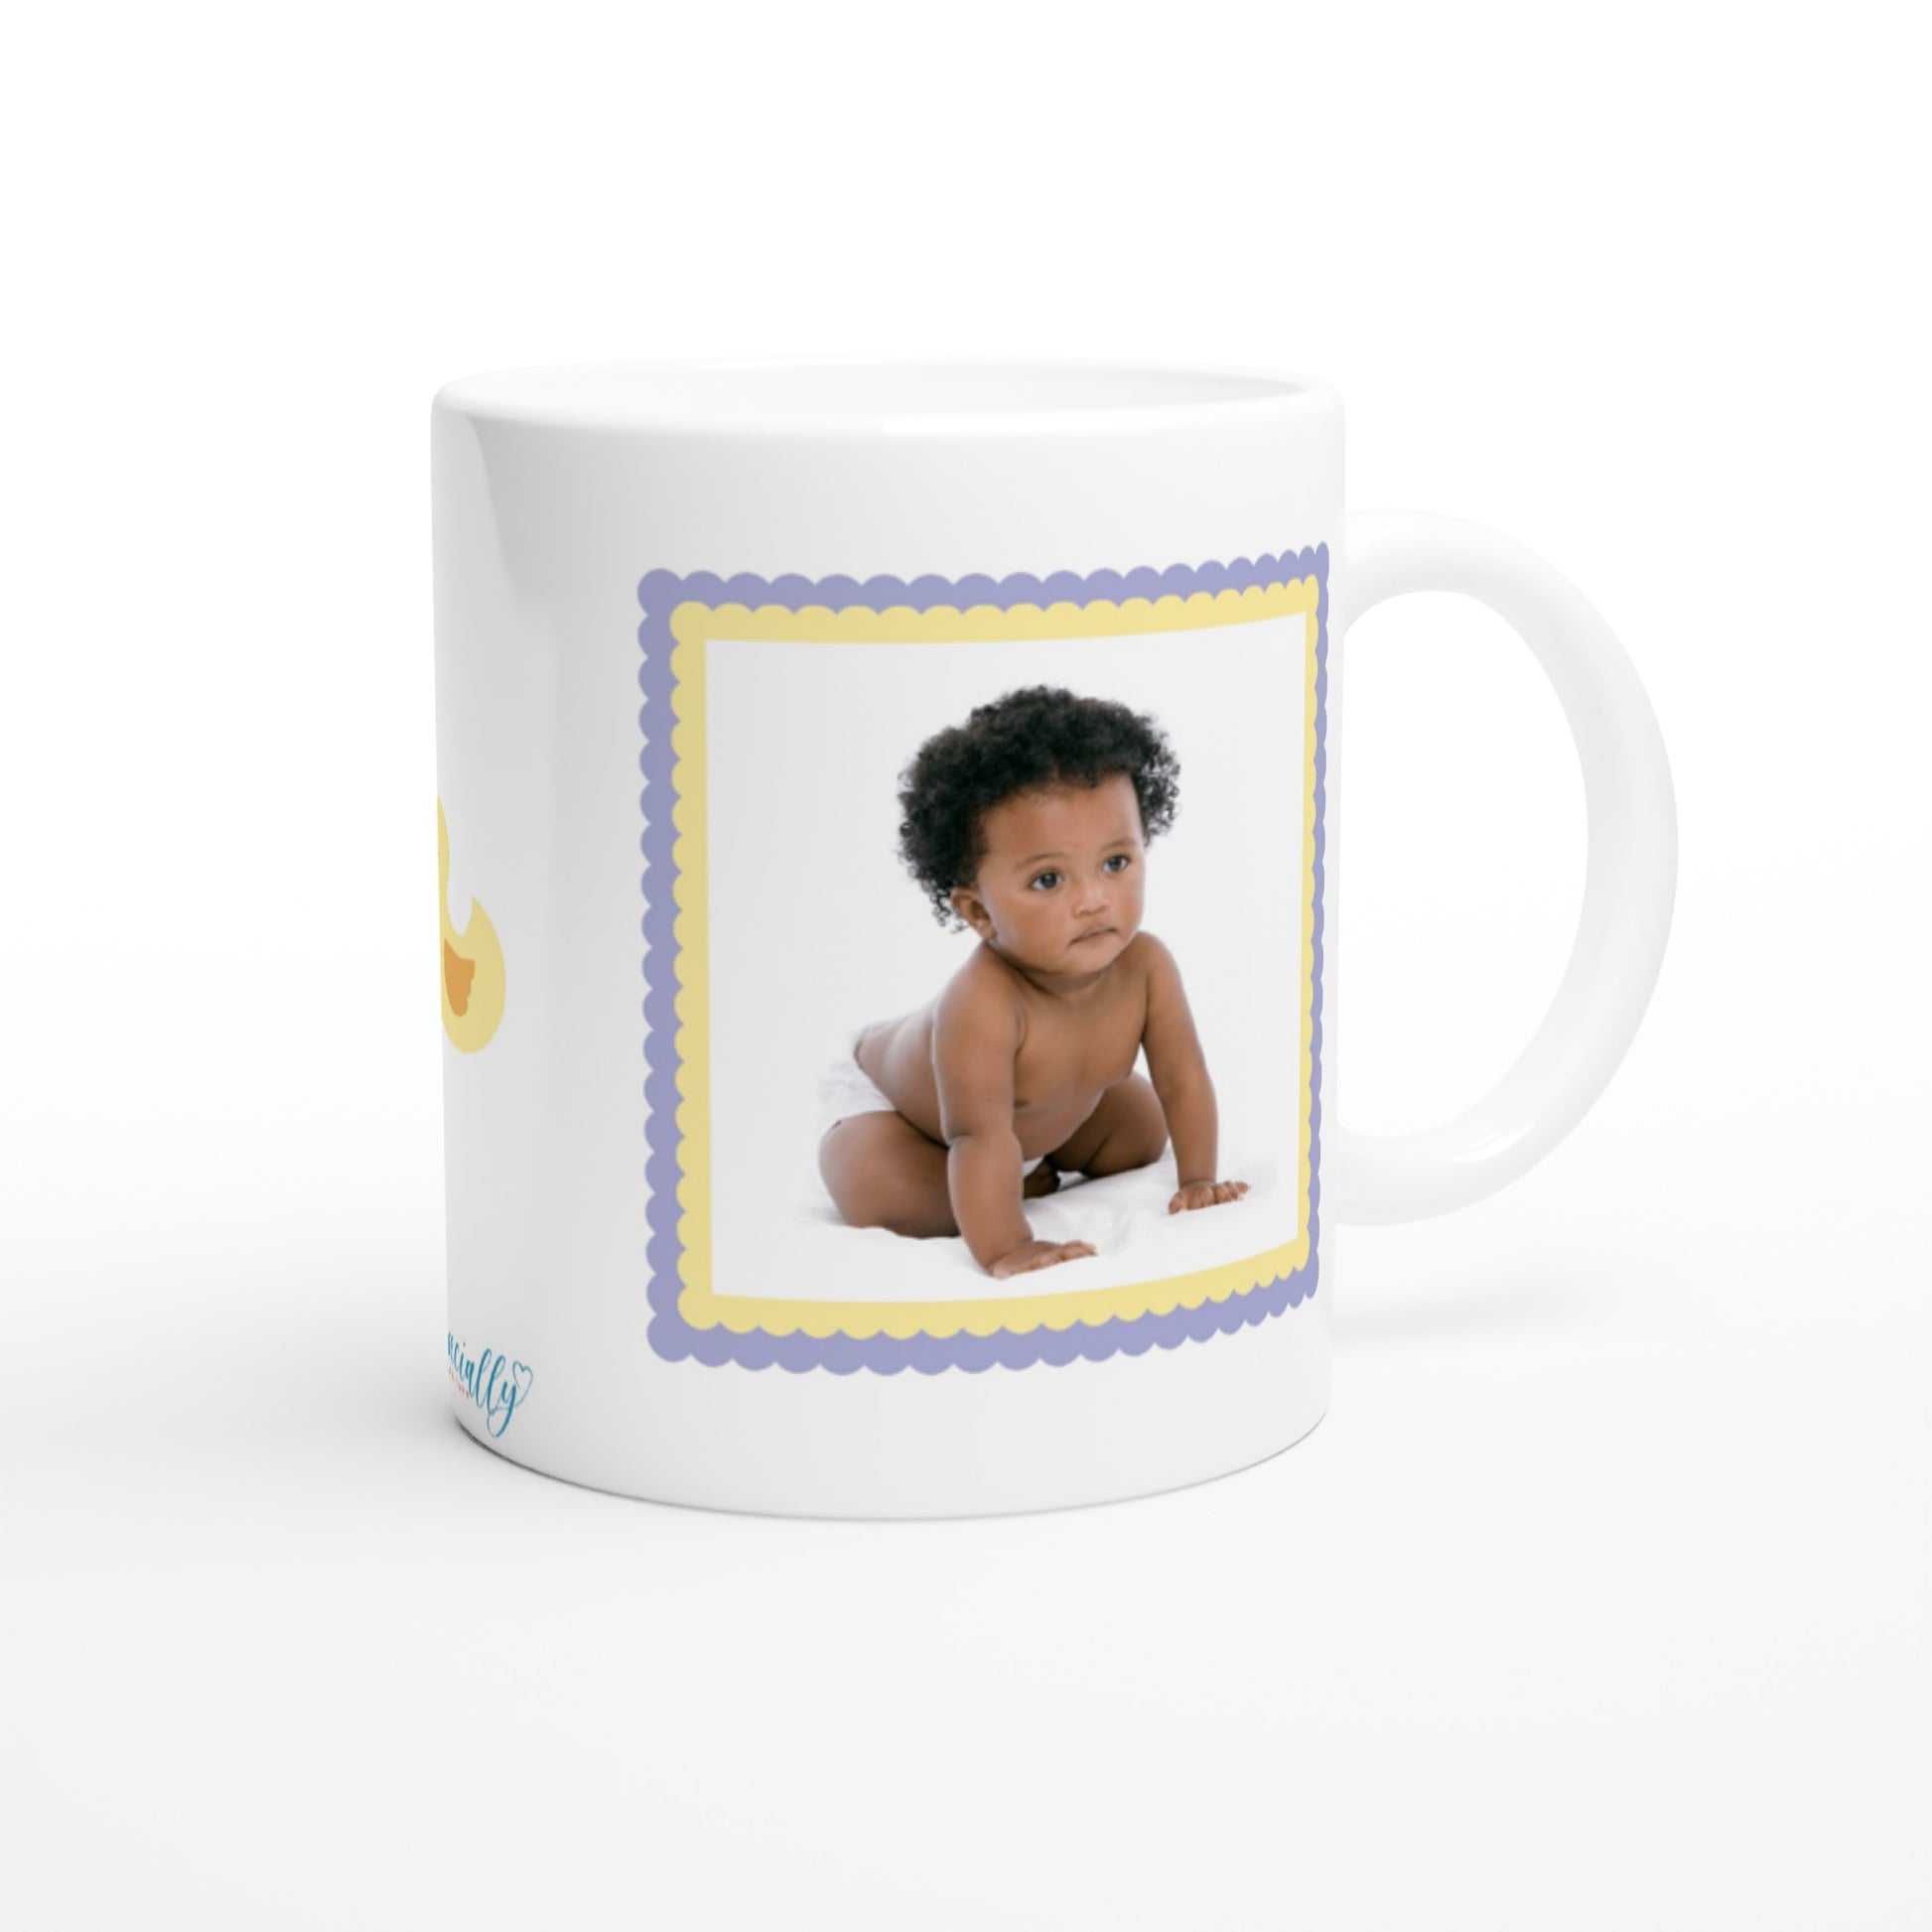 "Mommy's Bundle of Joy" Customizable Photo Mug back view